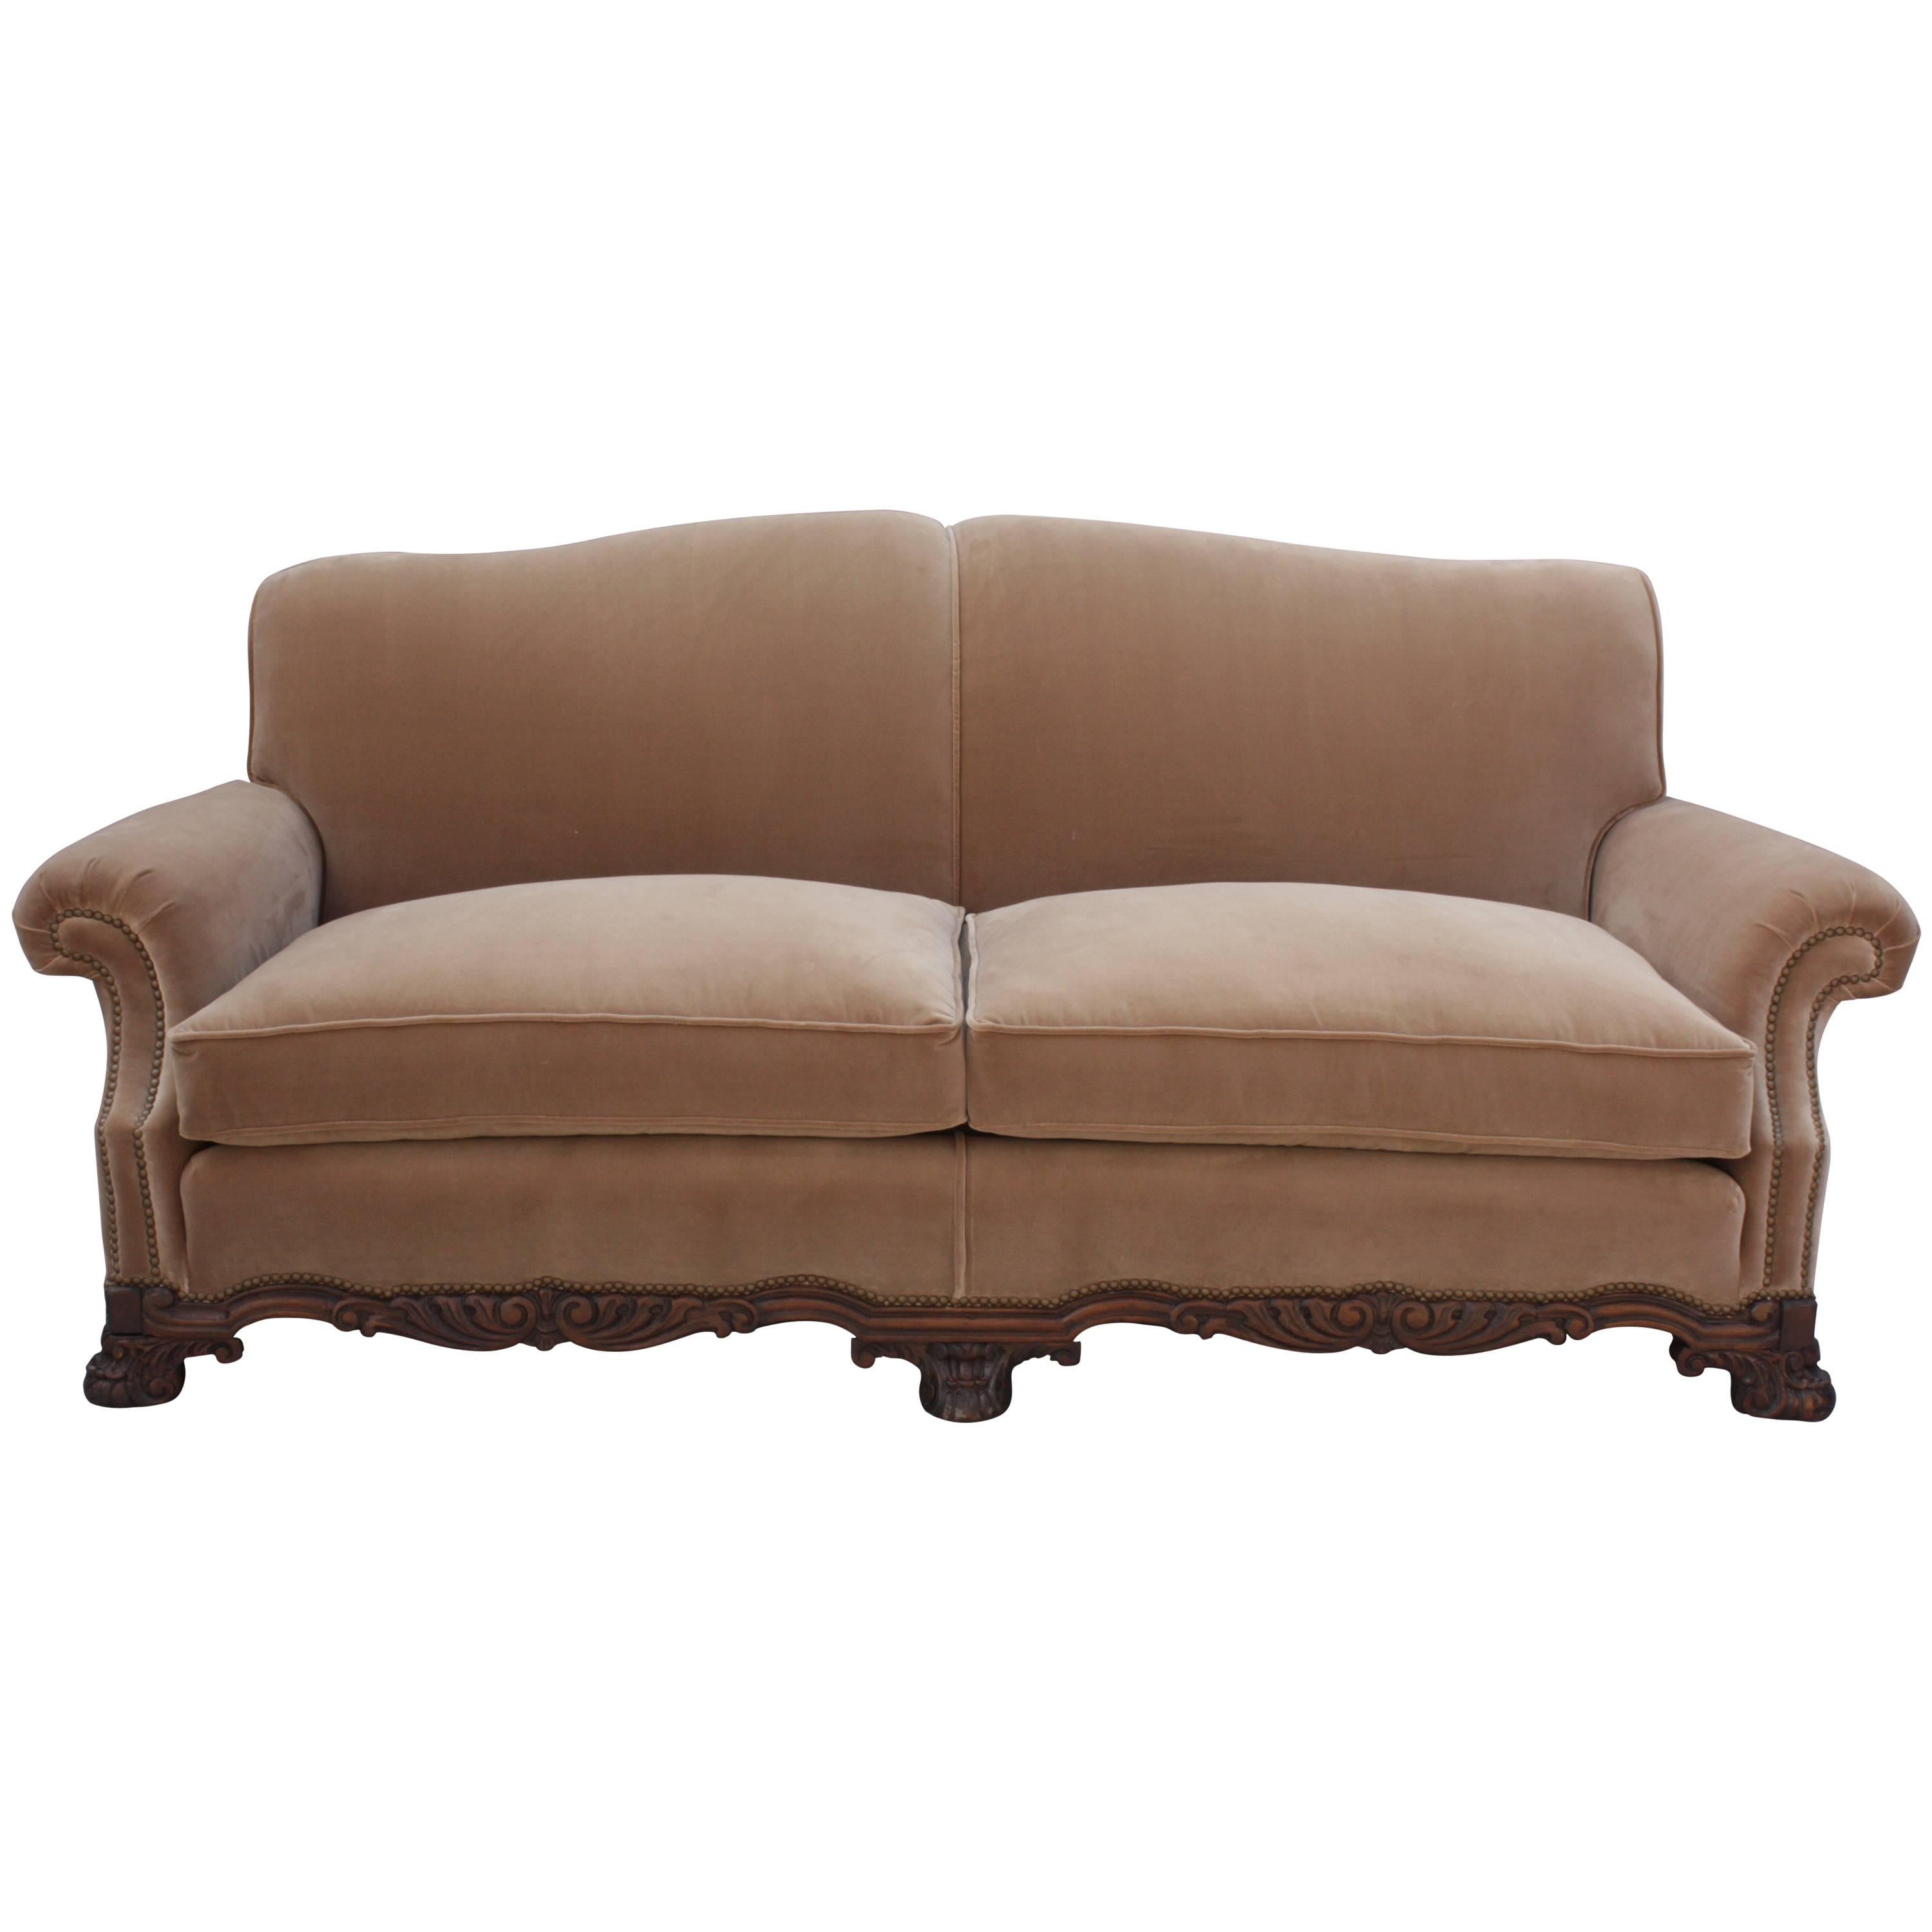 1920 Spanish Revival Upholstered Sofa